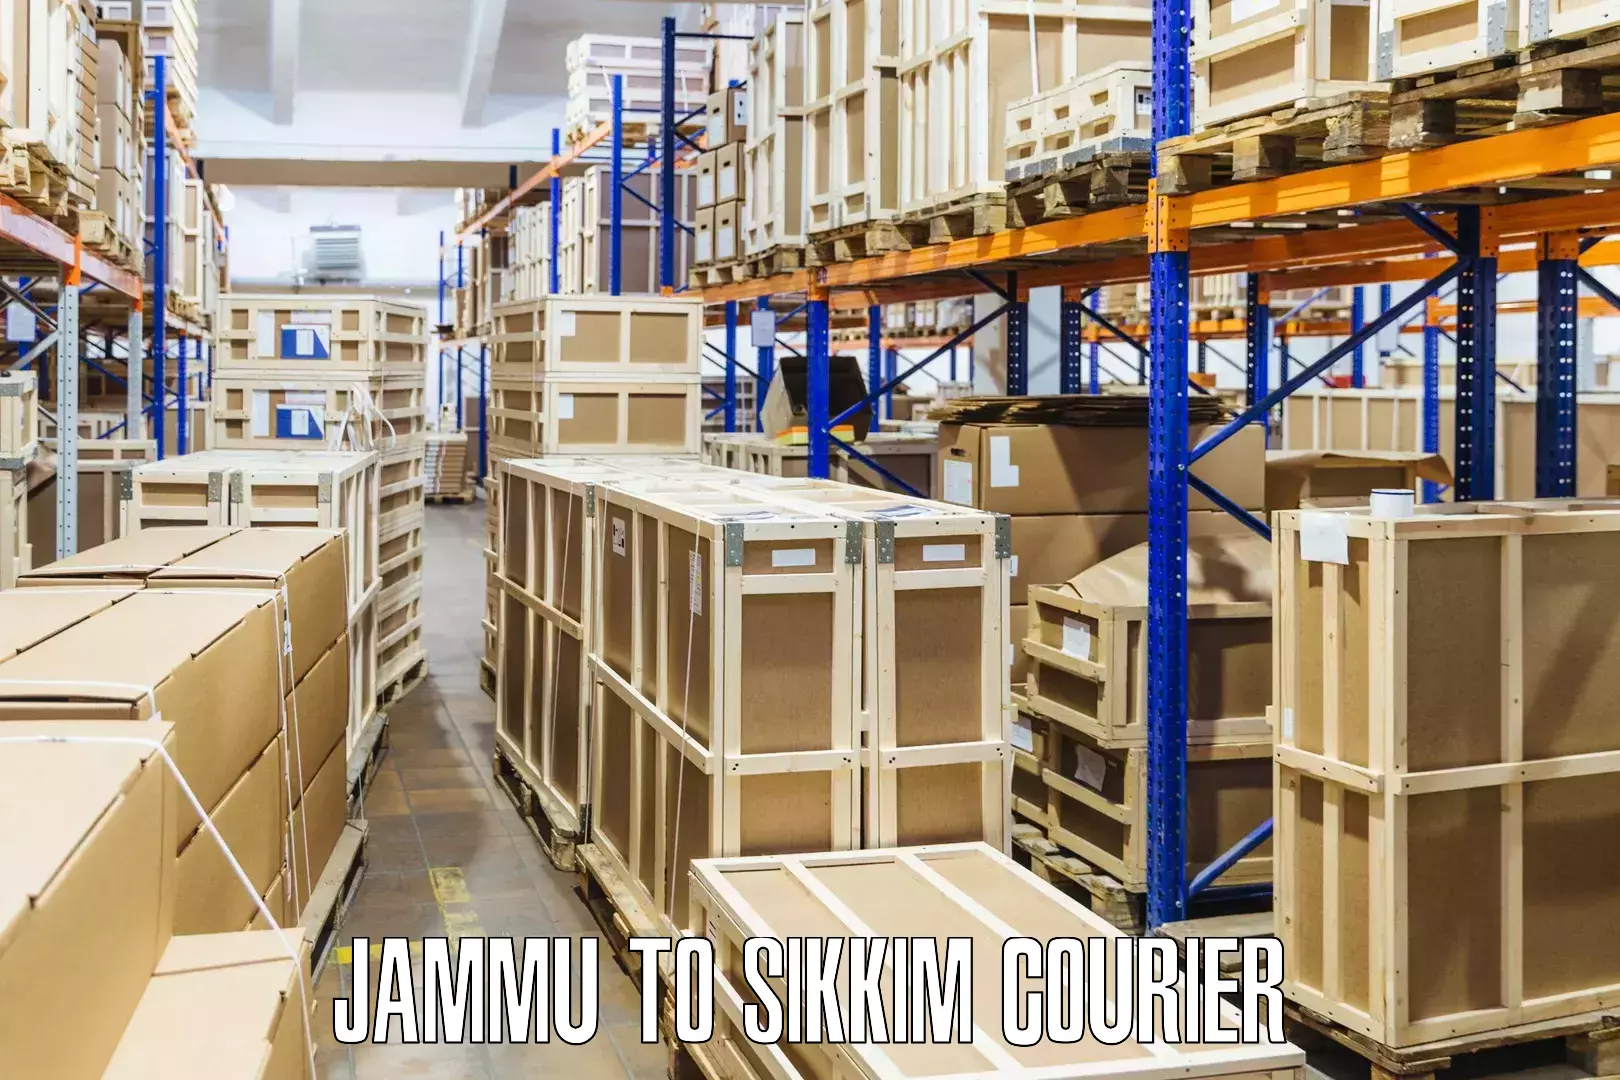 Custom courier strategies Jammu to North Sikkim